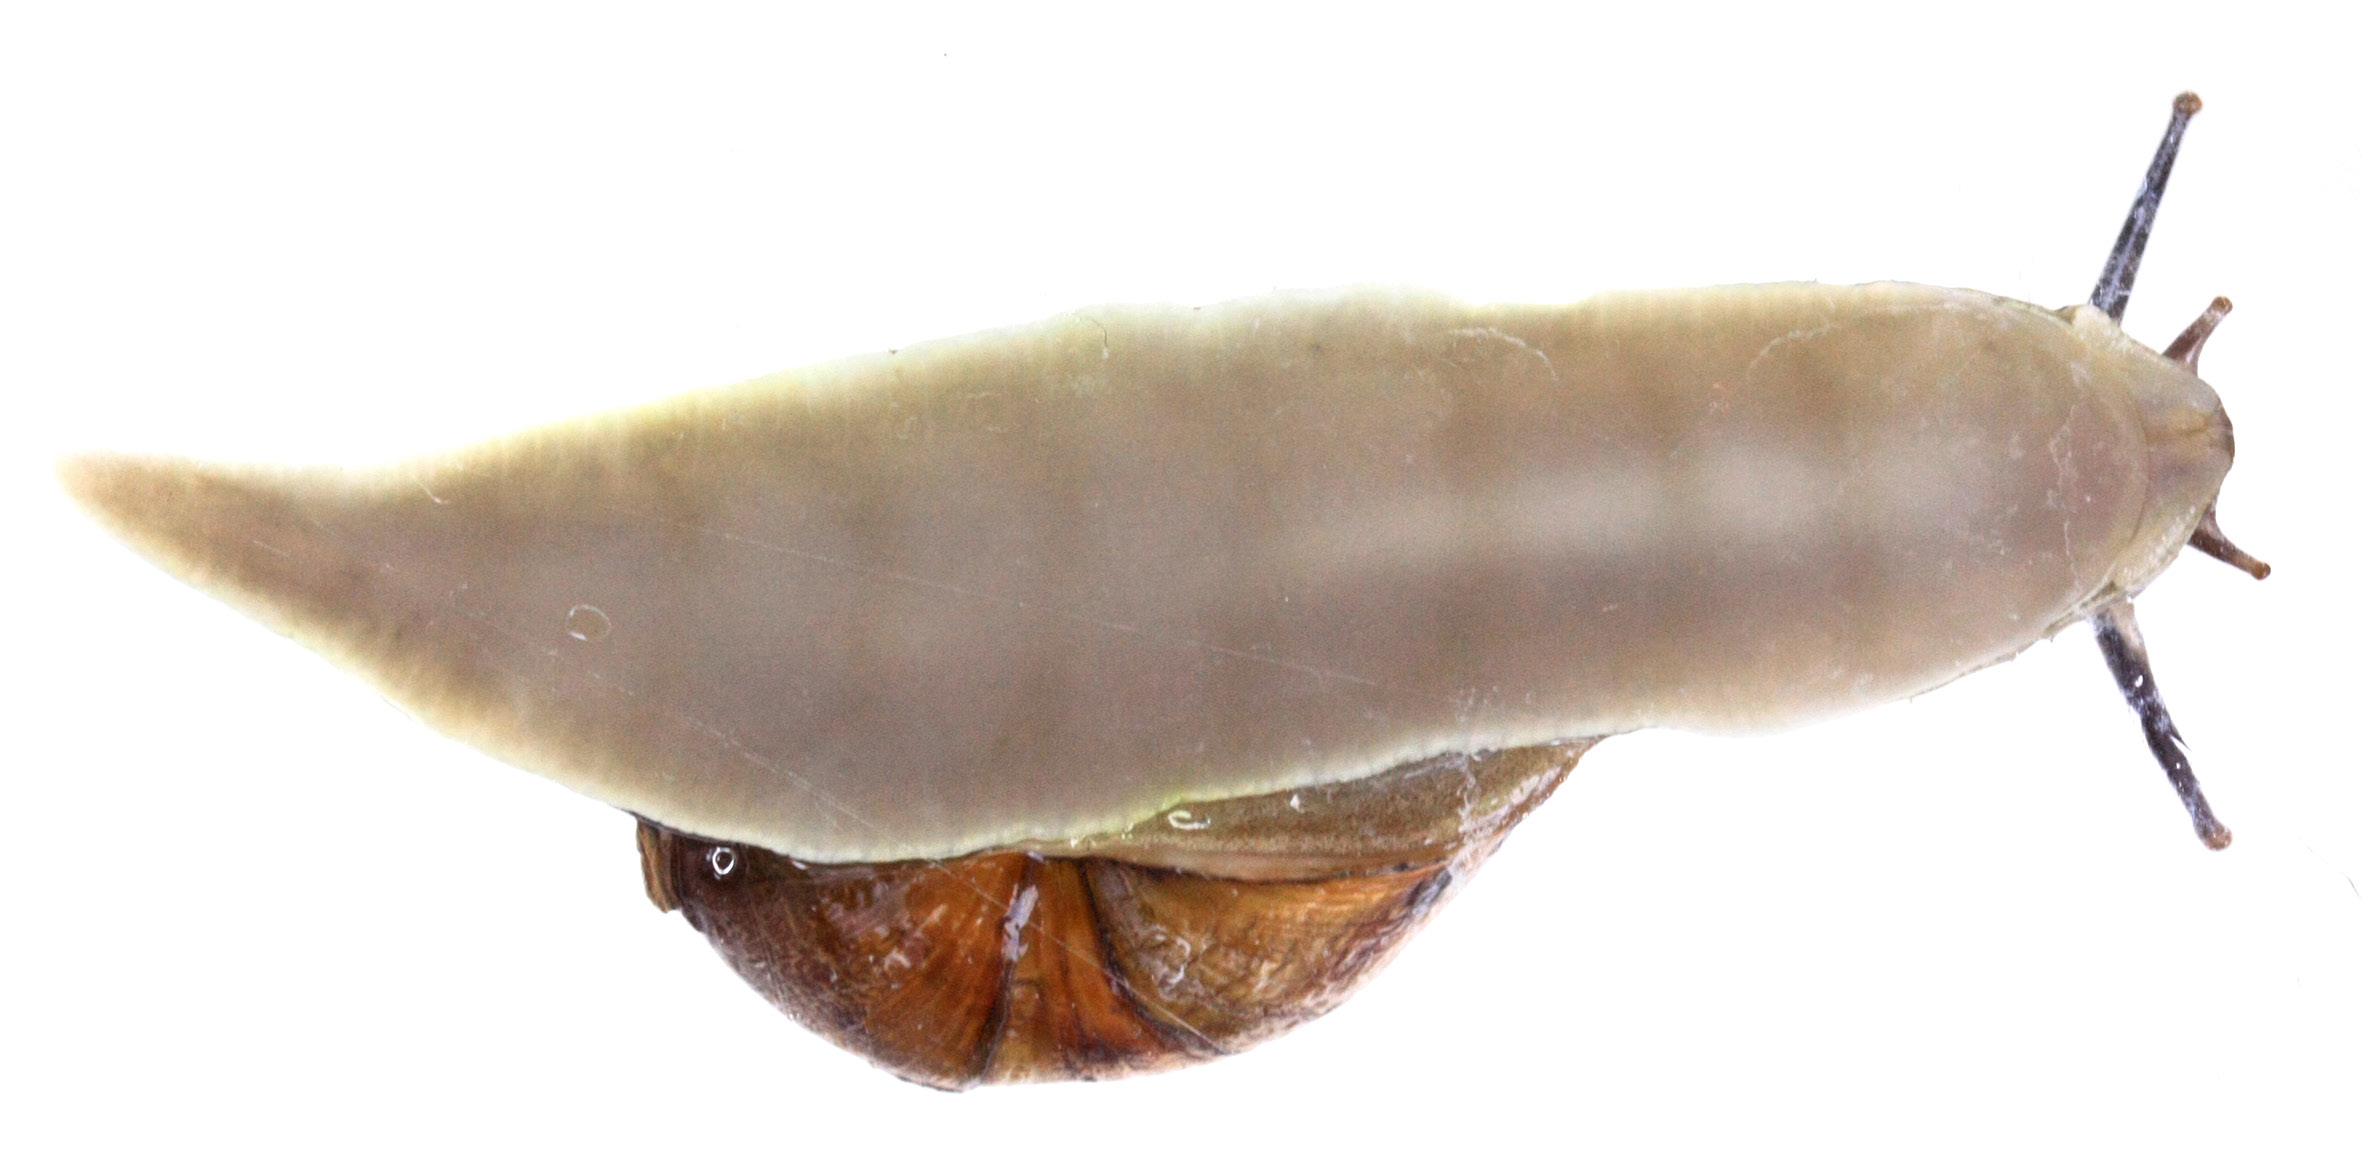 Εικόνα 2.6 Κοιλιακή πλευρά τού ποδιού σαλιγκαριού. Διακρίνονται τα κύματα μυϊκής συστολής καθώς το σαλιγκάρι κινείται.